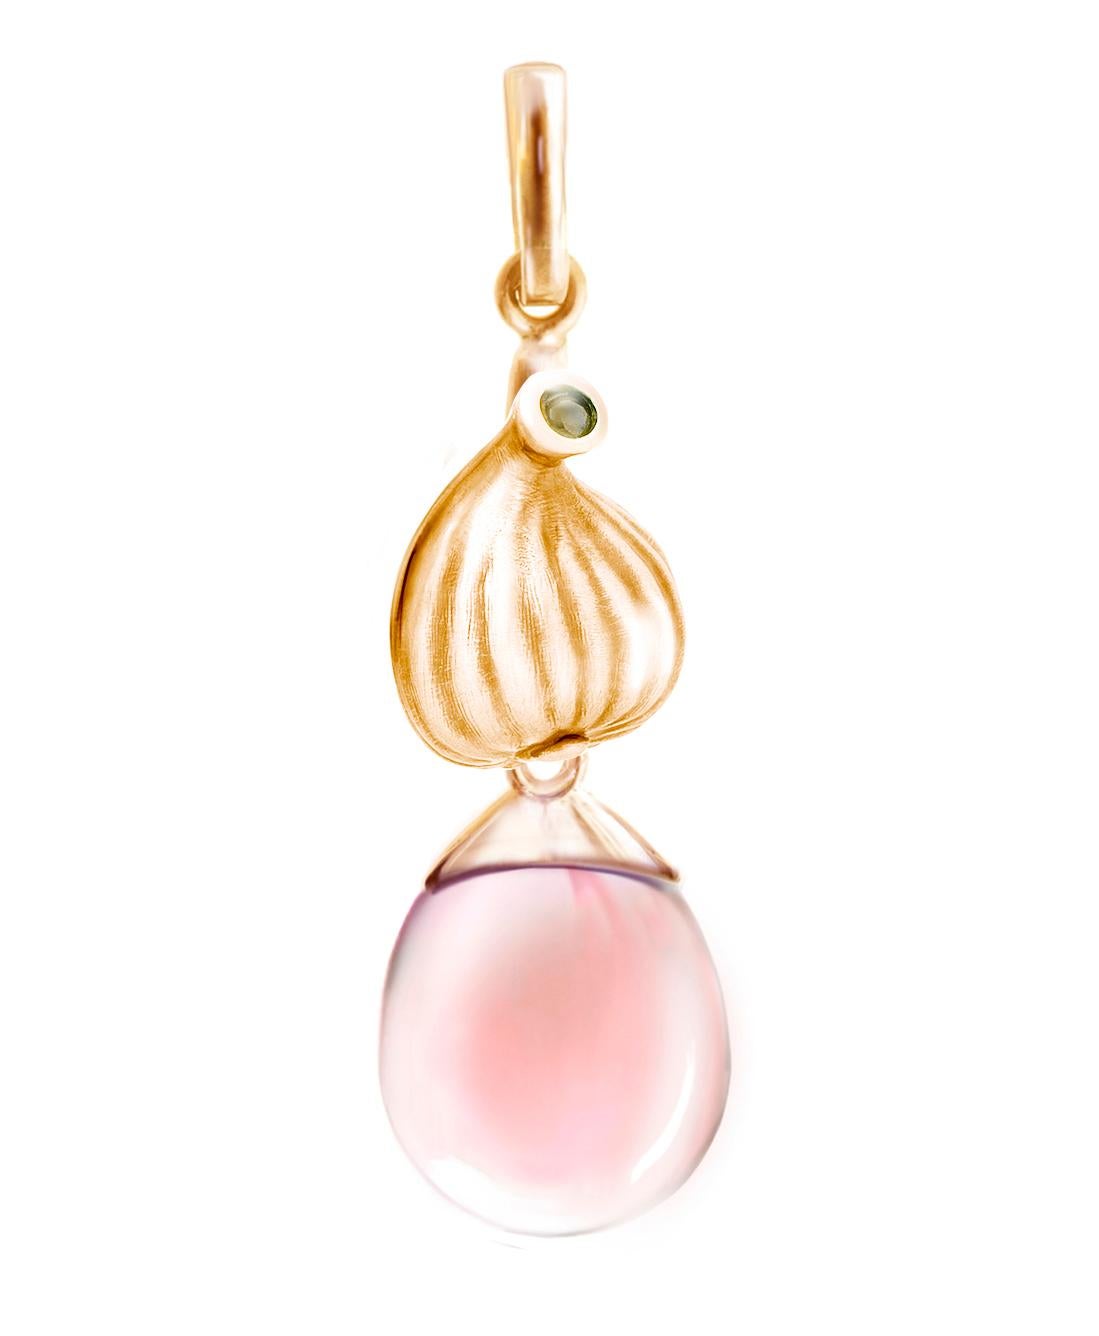 Ce collier pendentif Fig Garden est composé d'un quartz rose cabochon serti dans de l'or rose 18 carats. La pierre précieuse est intentionnellement laissée ouverte pour laisser passer la lumière, ce qui rehausse sa beauté. Cette collection a été